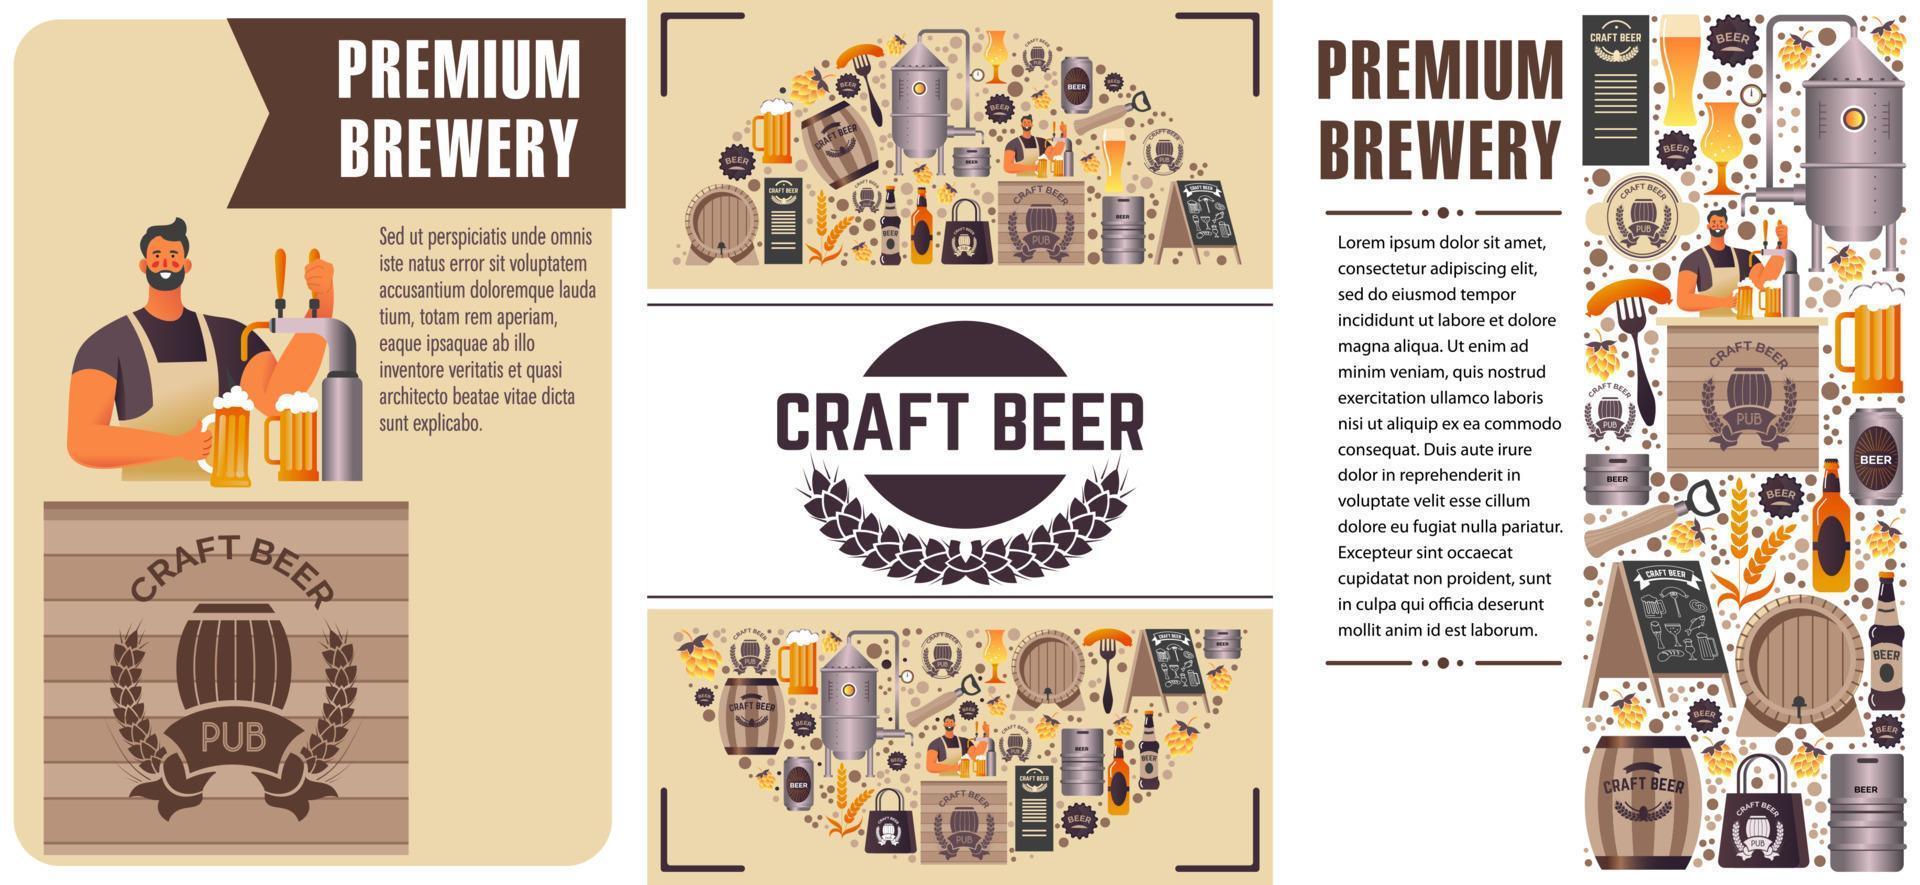 produção e venda de cerveja artesanal, cervejaria premium vetor